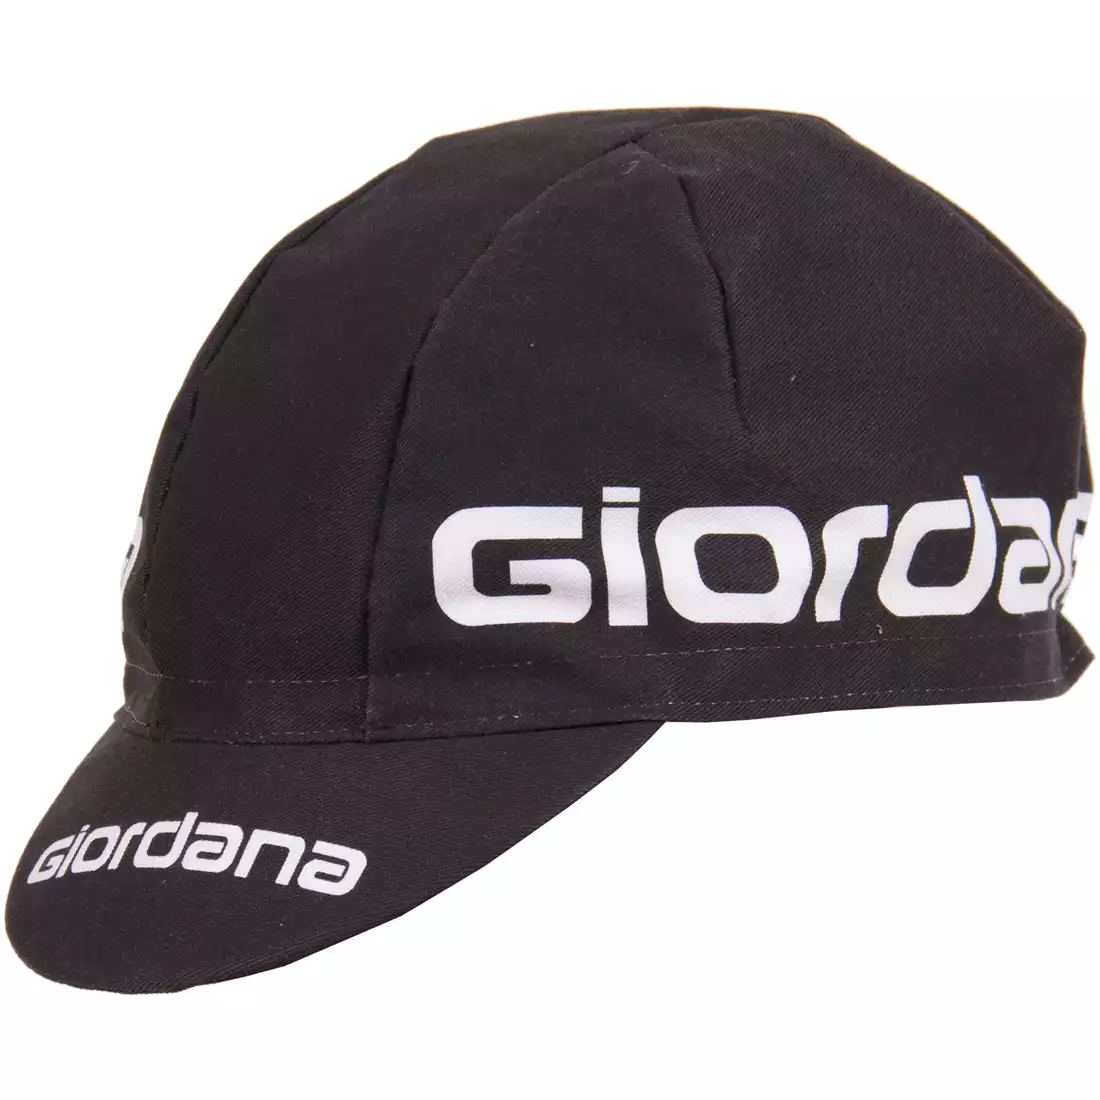 GIORDANA SS18 czapeczka kolarska - Giordana Logo - Black GI-S5-COCA-GIOR-BLCK one size